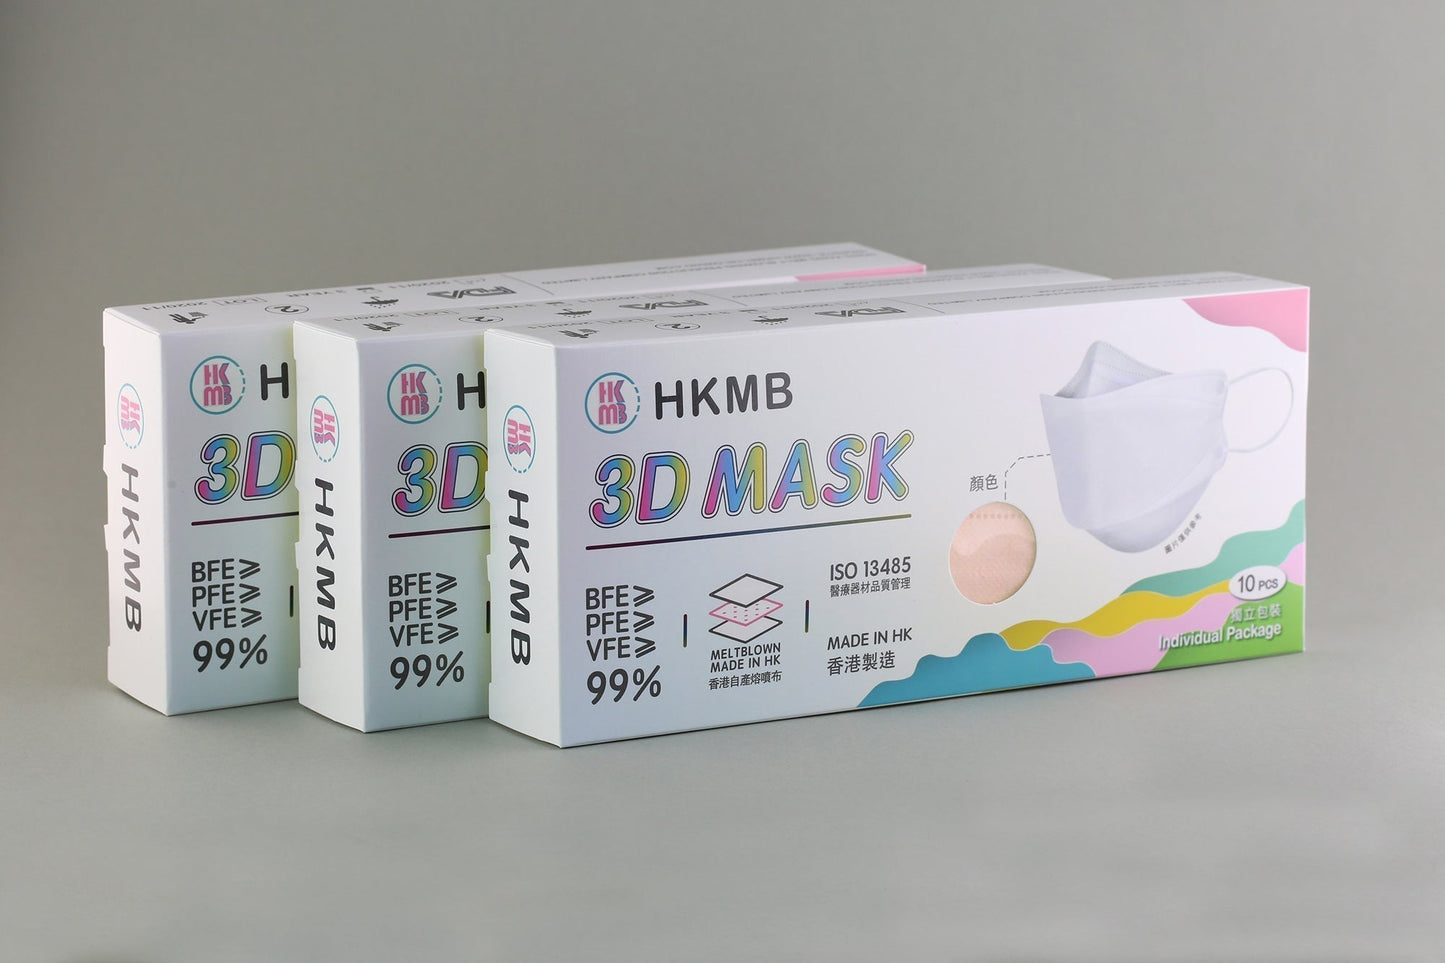 【現貨】Cats gathering 3D Mask HKMB VFE99 10pcs/box【Made in Hong Kong】